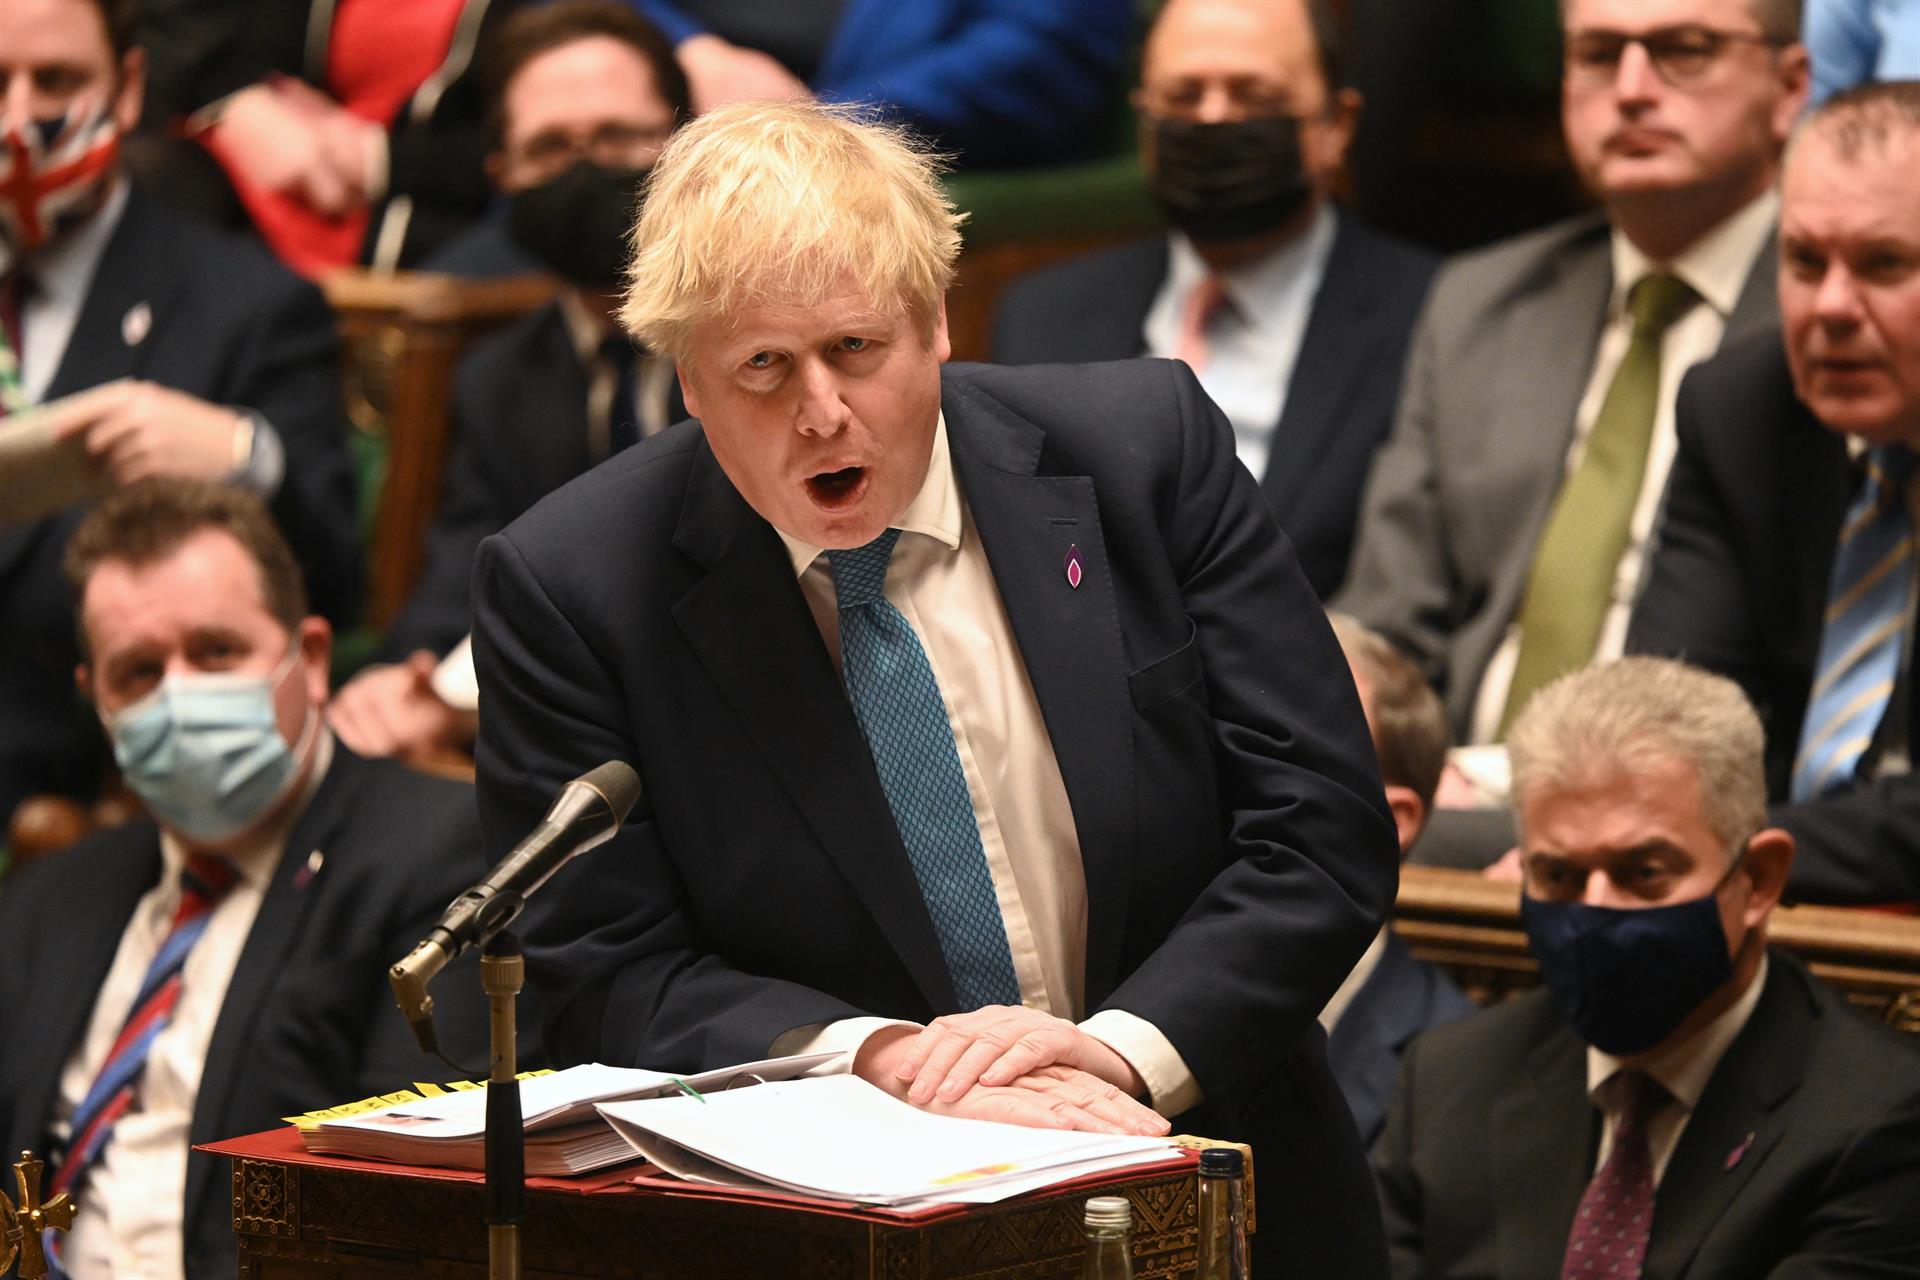 Boris Johnson comparecerá ante el parlamento tras recibir el informe sobre el “PartyGate”